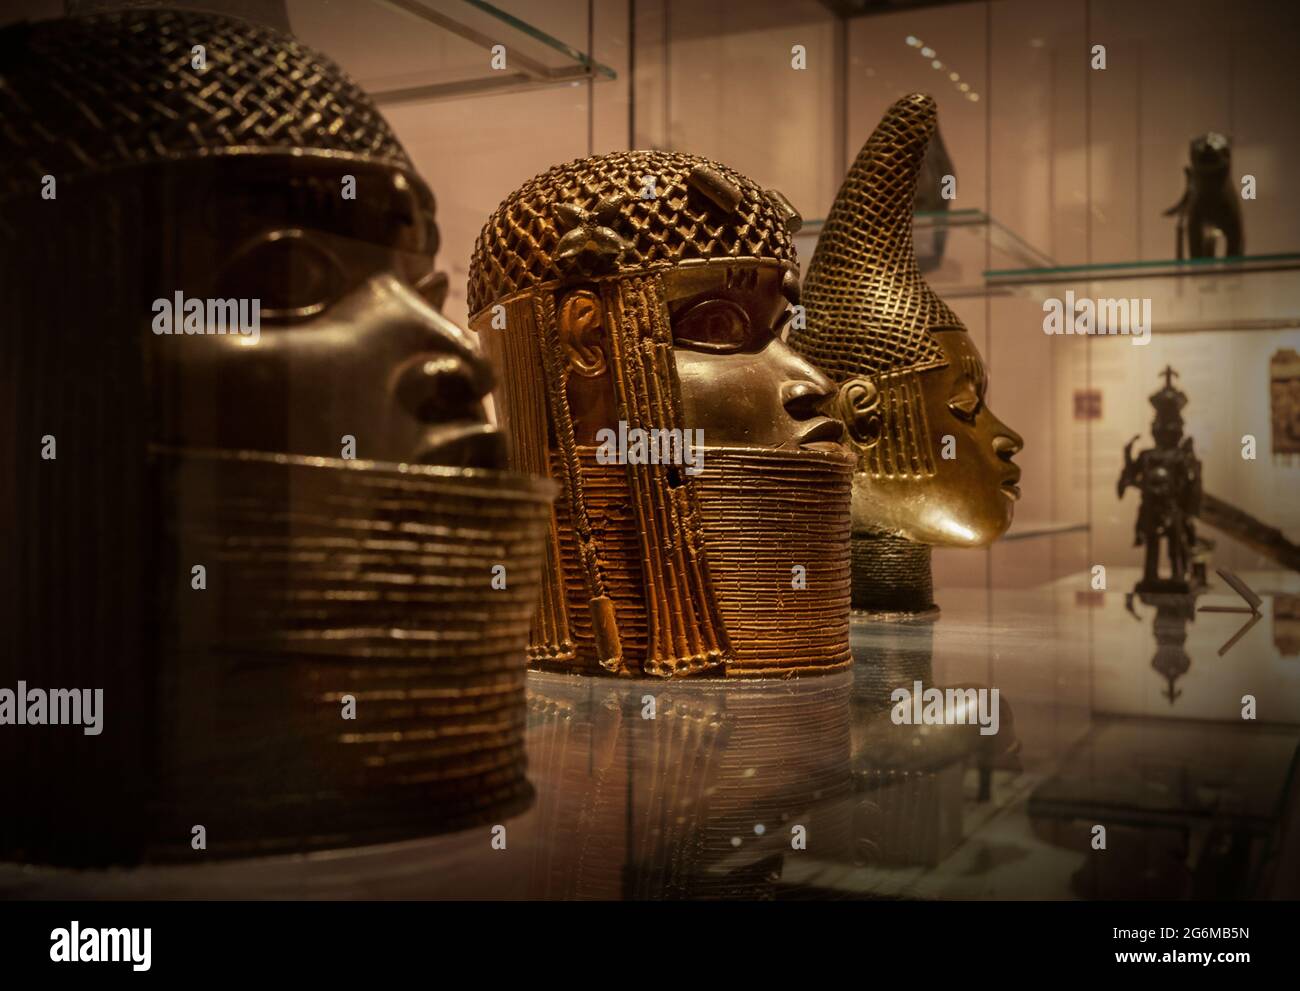 Museo Británico-Los Bronces de Benin Fotografía de Brian Harris 2021-07 Cabezas de Bronce de Benin en el Museo Británico, Londres, Inglaterra. L-R: Cabeza de latón de una O Foto de stock